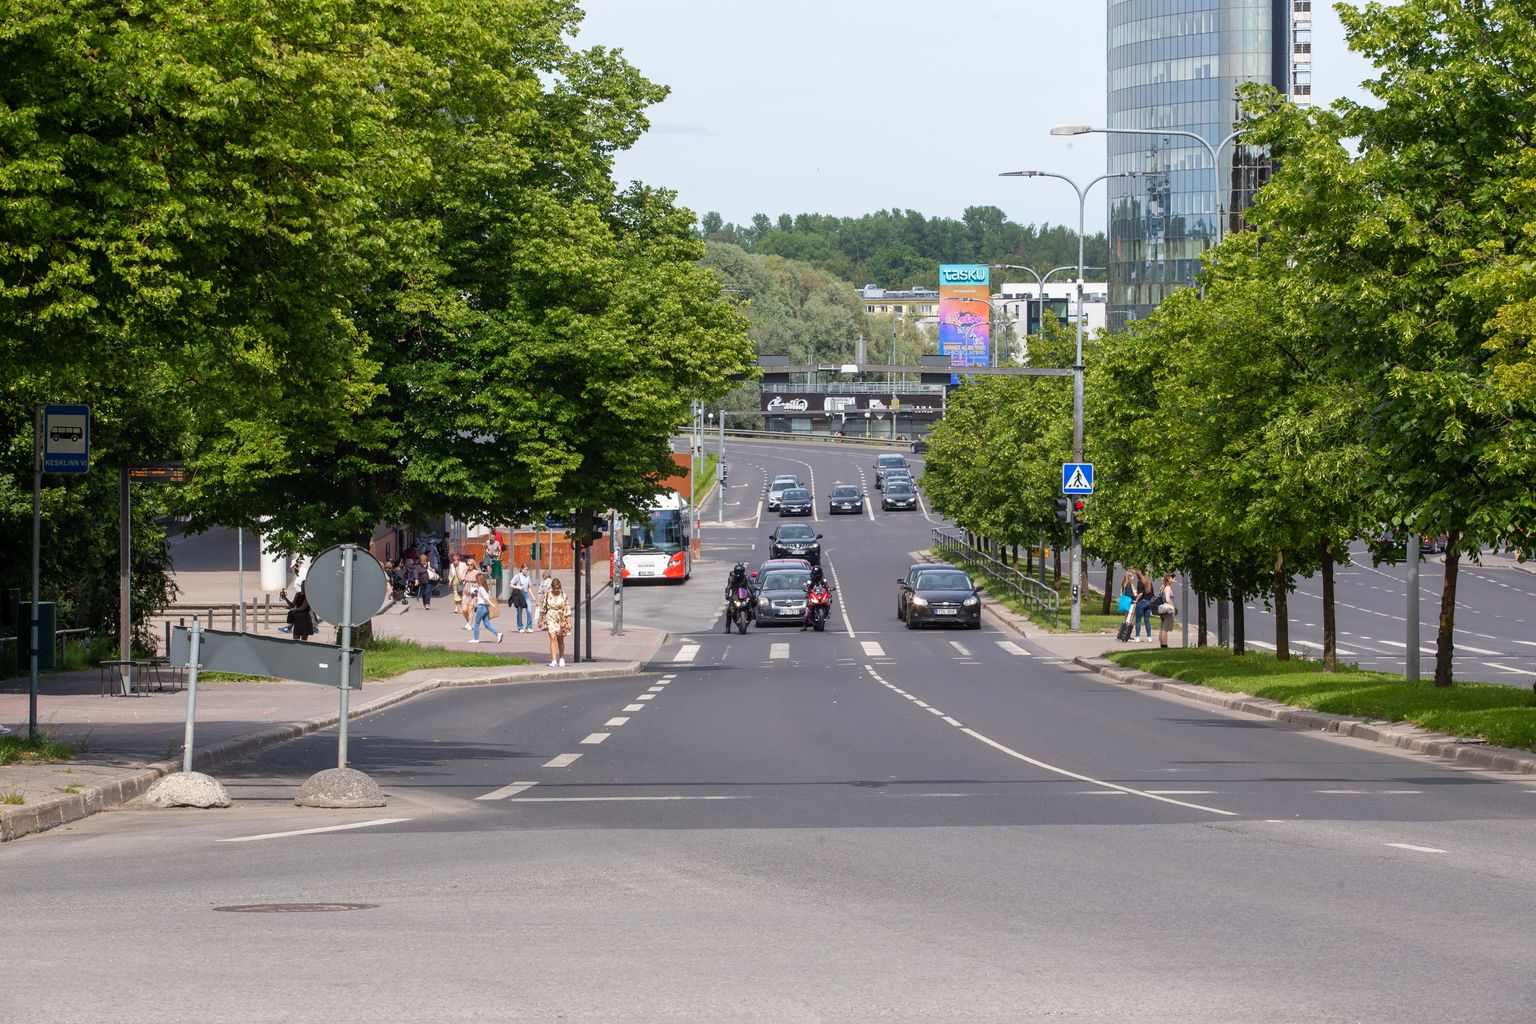 Mööda Riia tänavat kulgeb reedel kell 18 ühissõit, et toetada autovabadust.